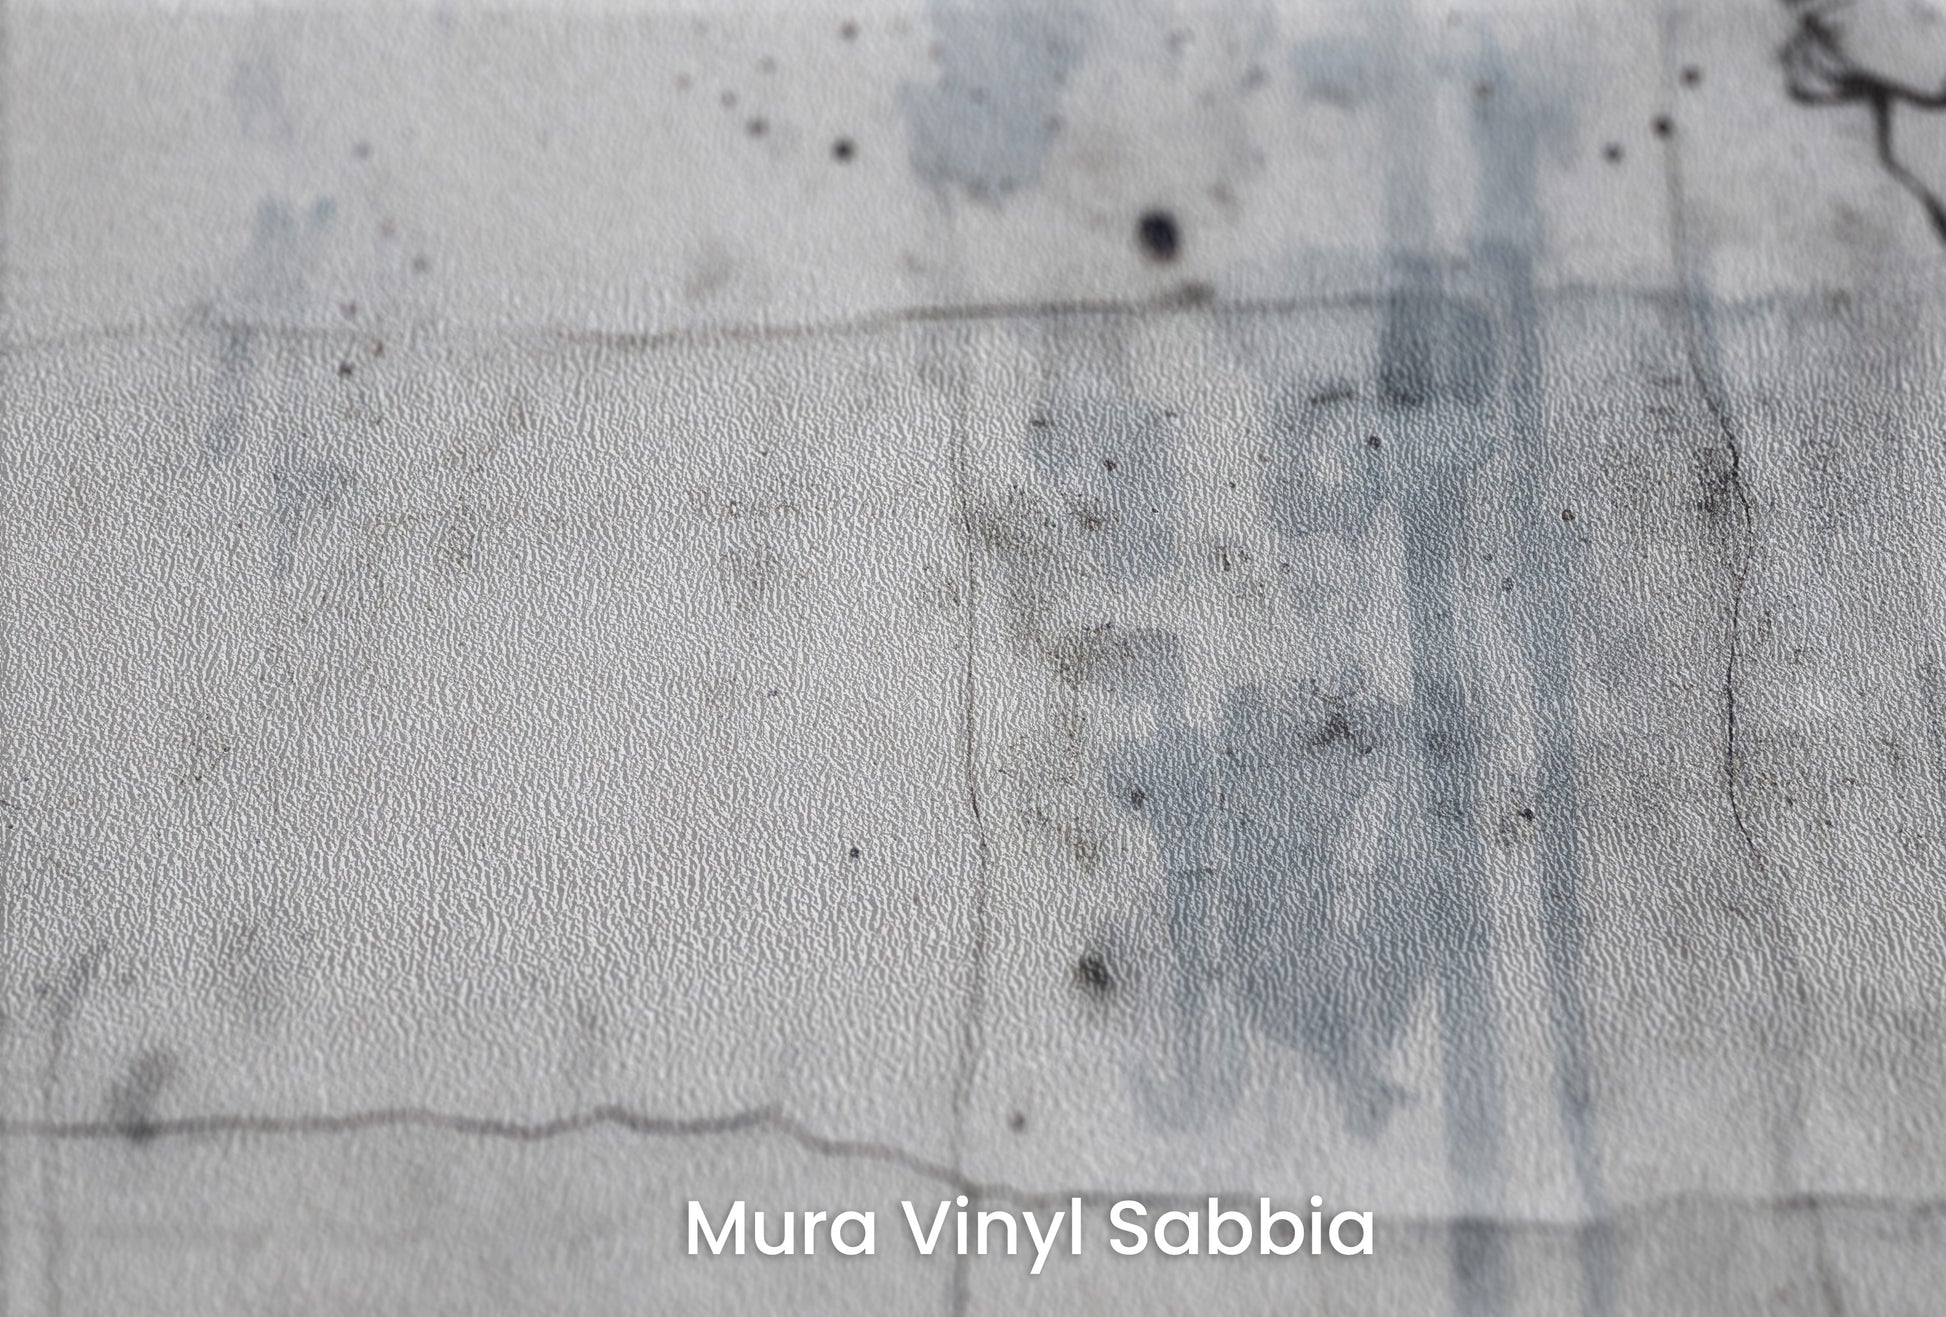 Zbliżenie na artystyczną fototapetę o nazwie URBAN BLOSSOM na podłożu Mura Vinyl Sabbia struktura grubego ziarna piasku.